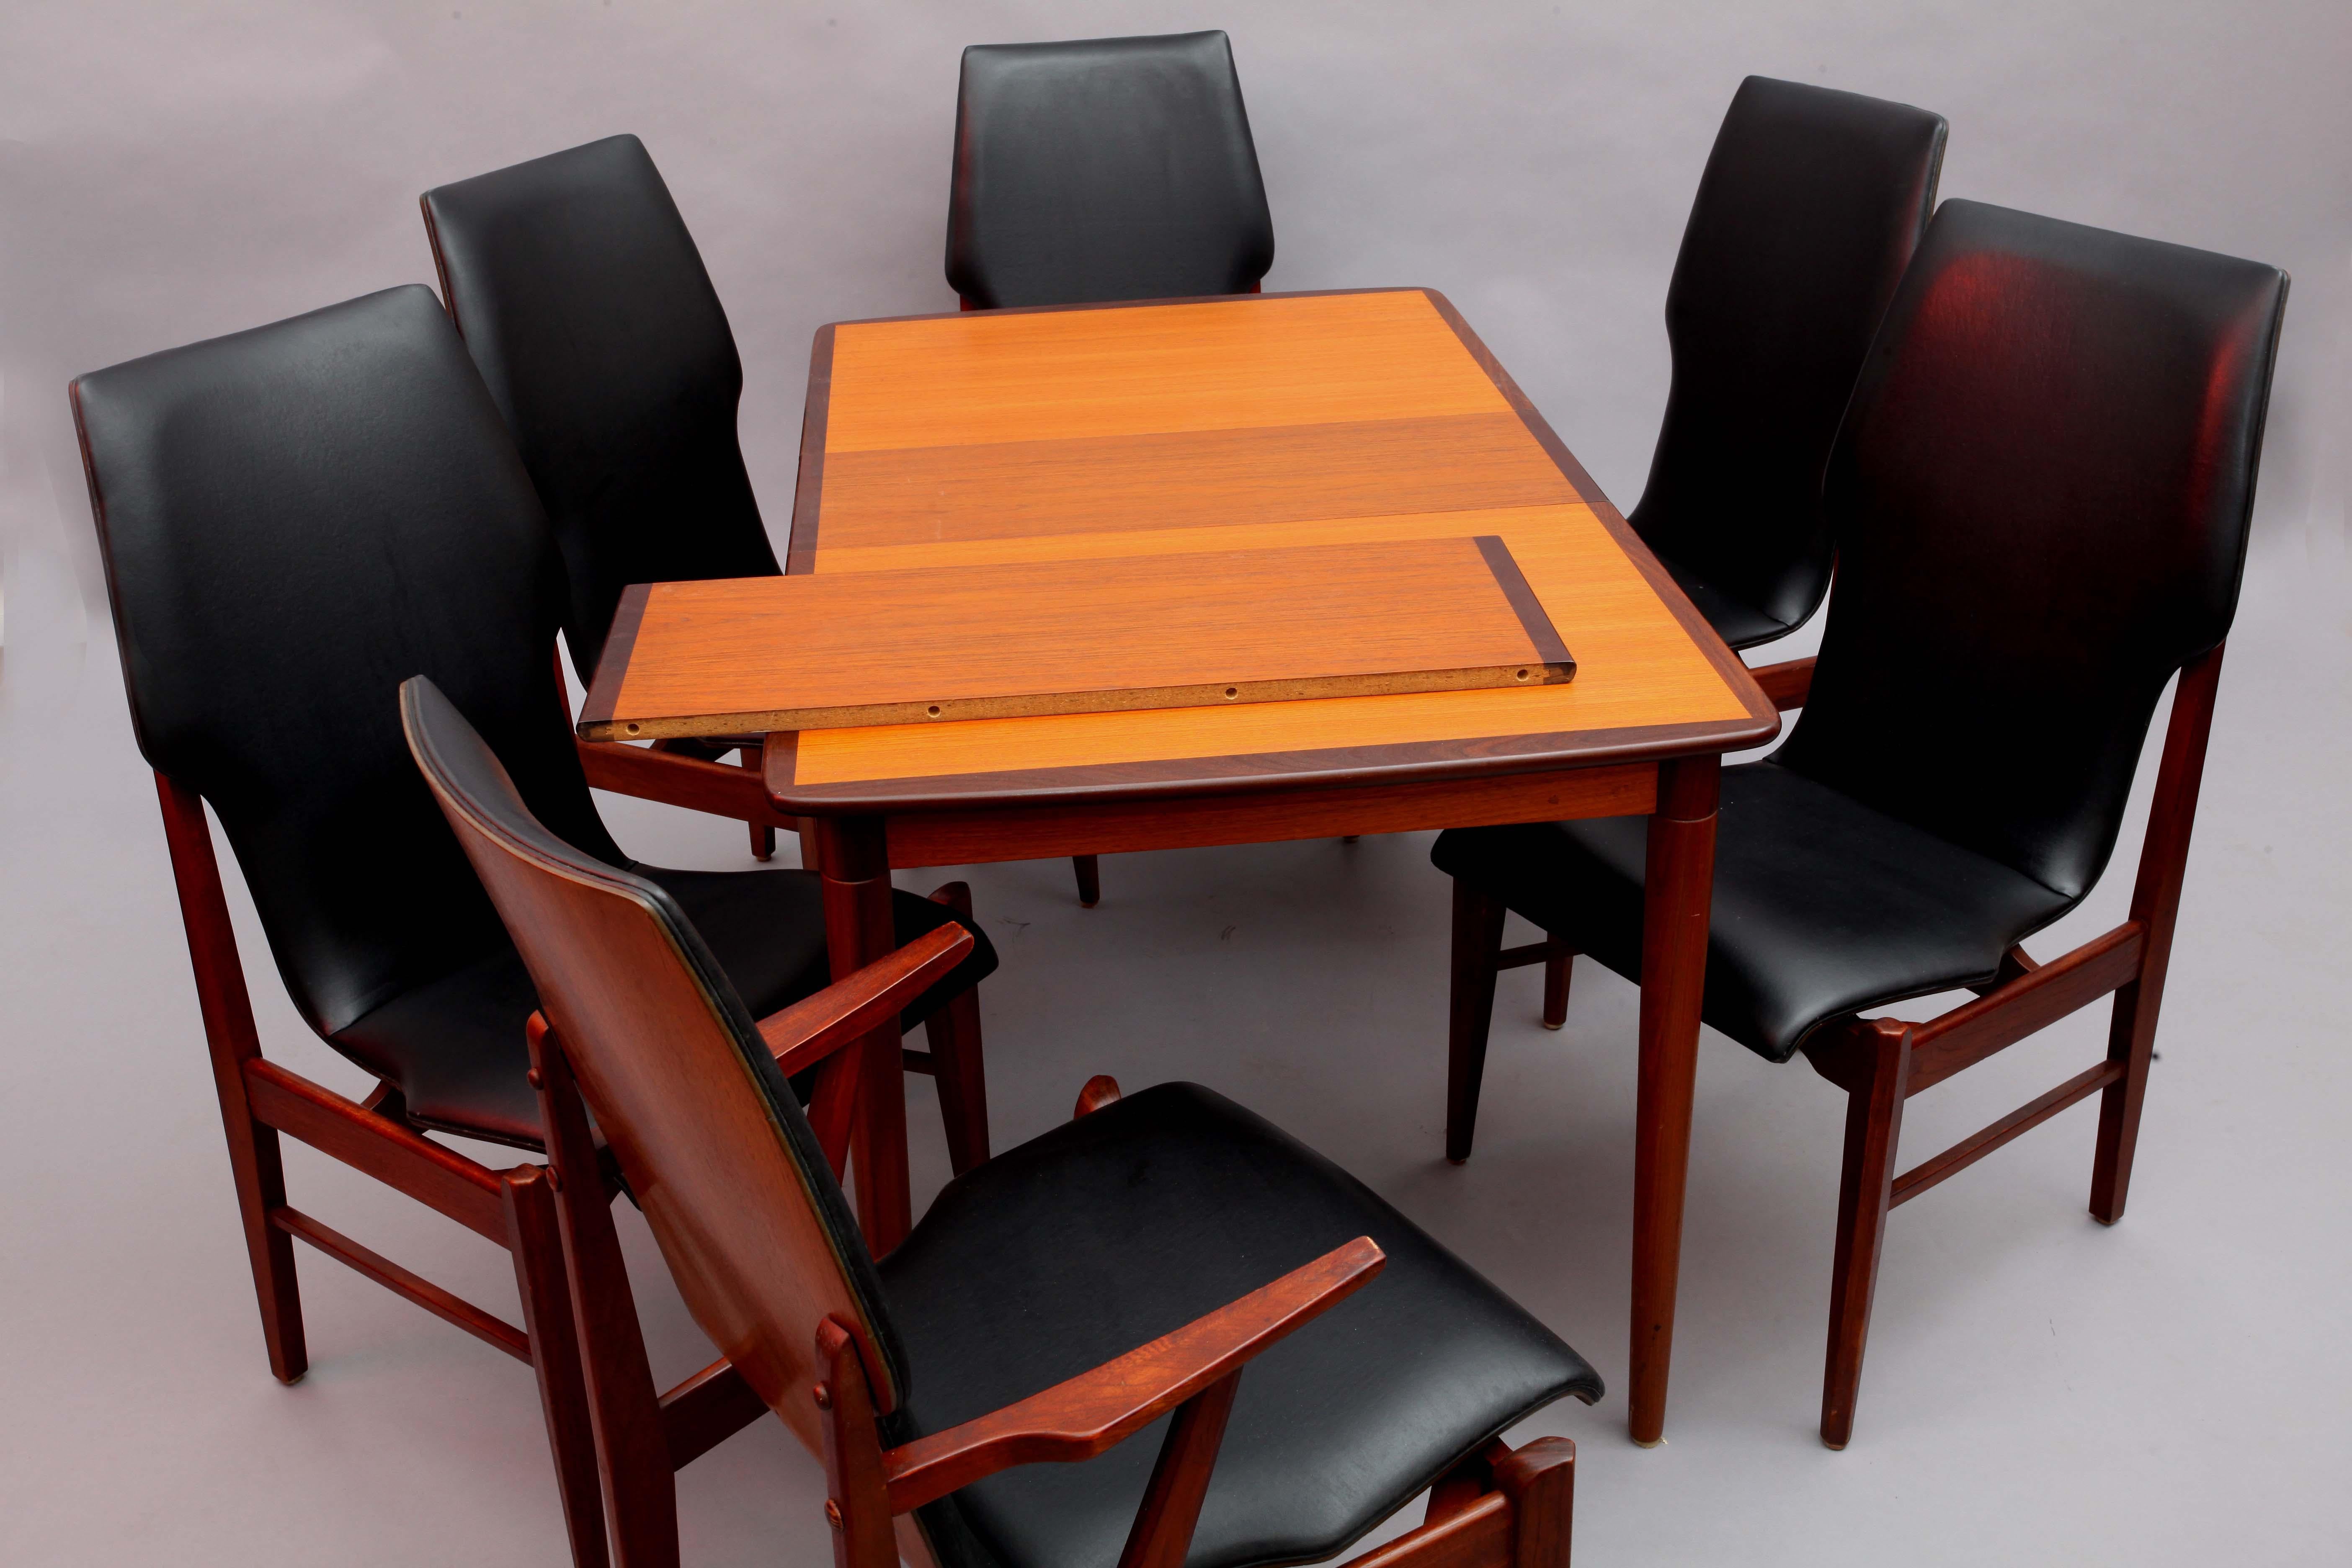 Scandinavian Modern Scandinavian Extendable Dining Table with Six Chairs, Denmark, 1950, Teak Wood